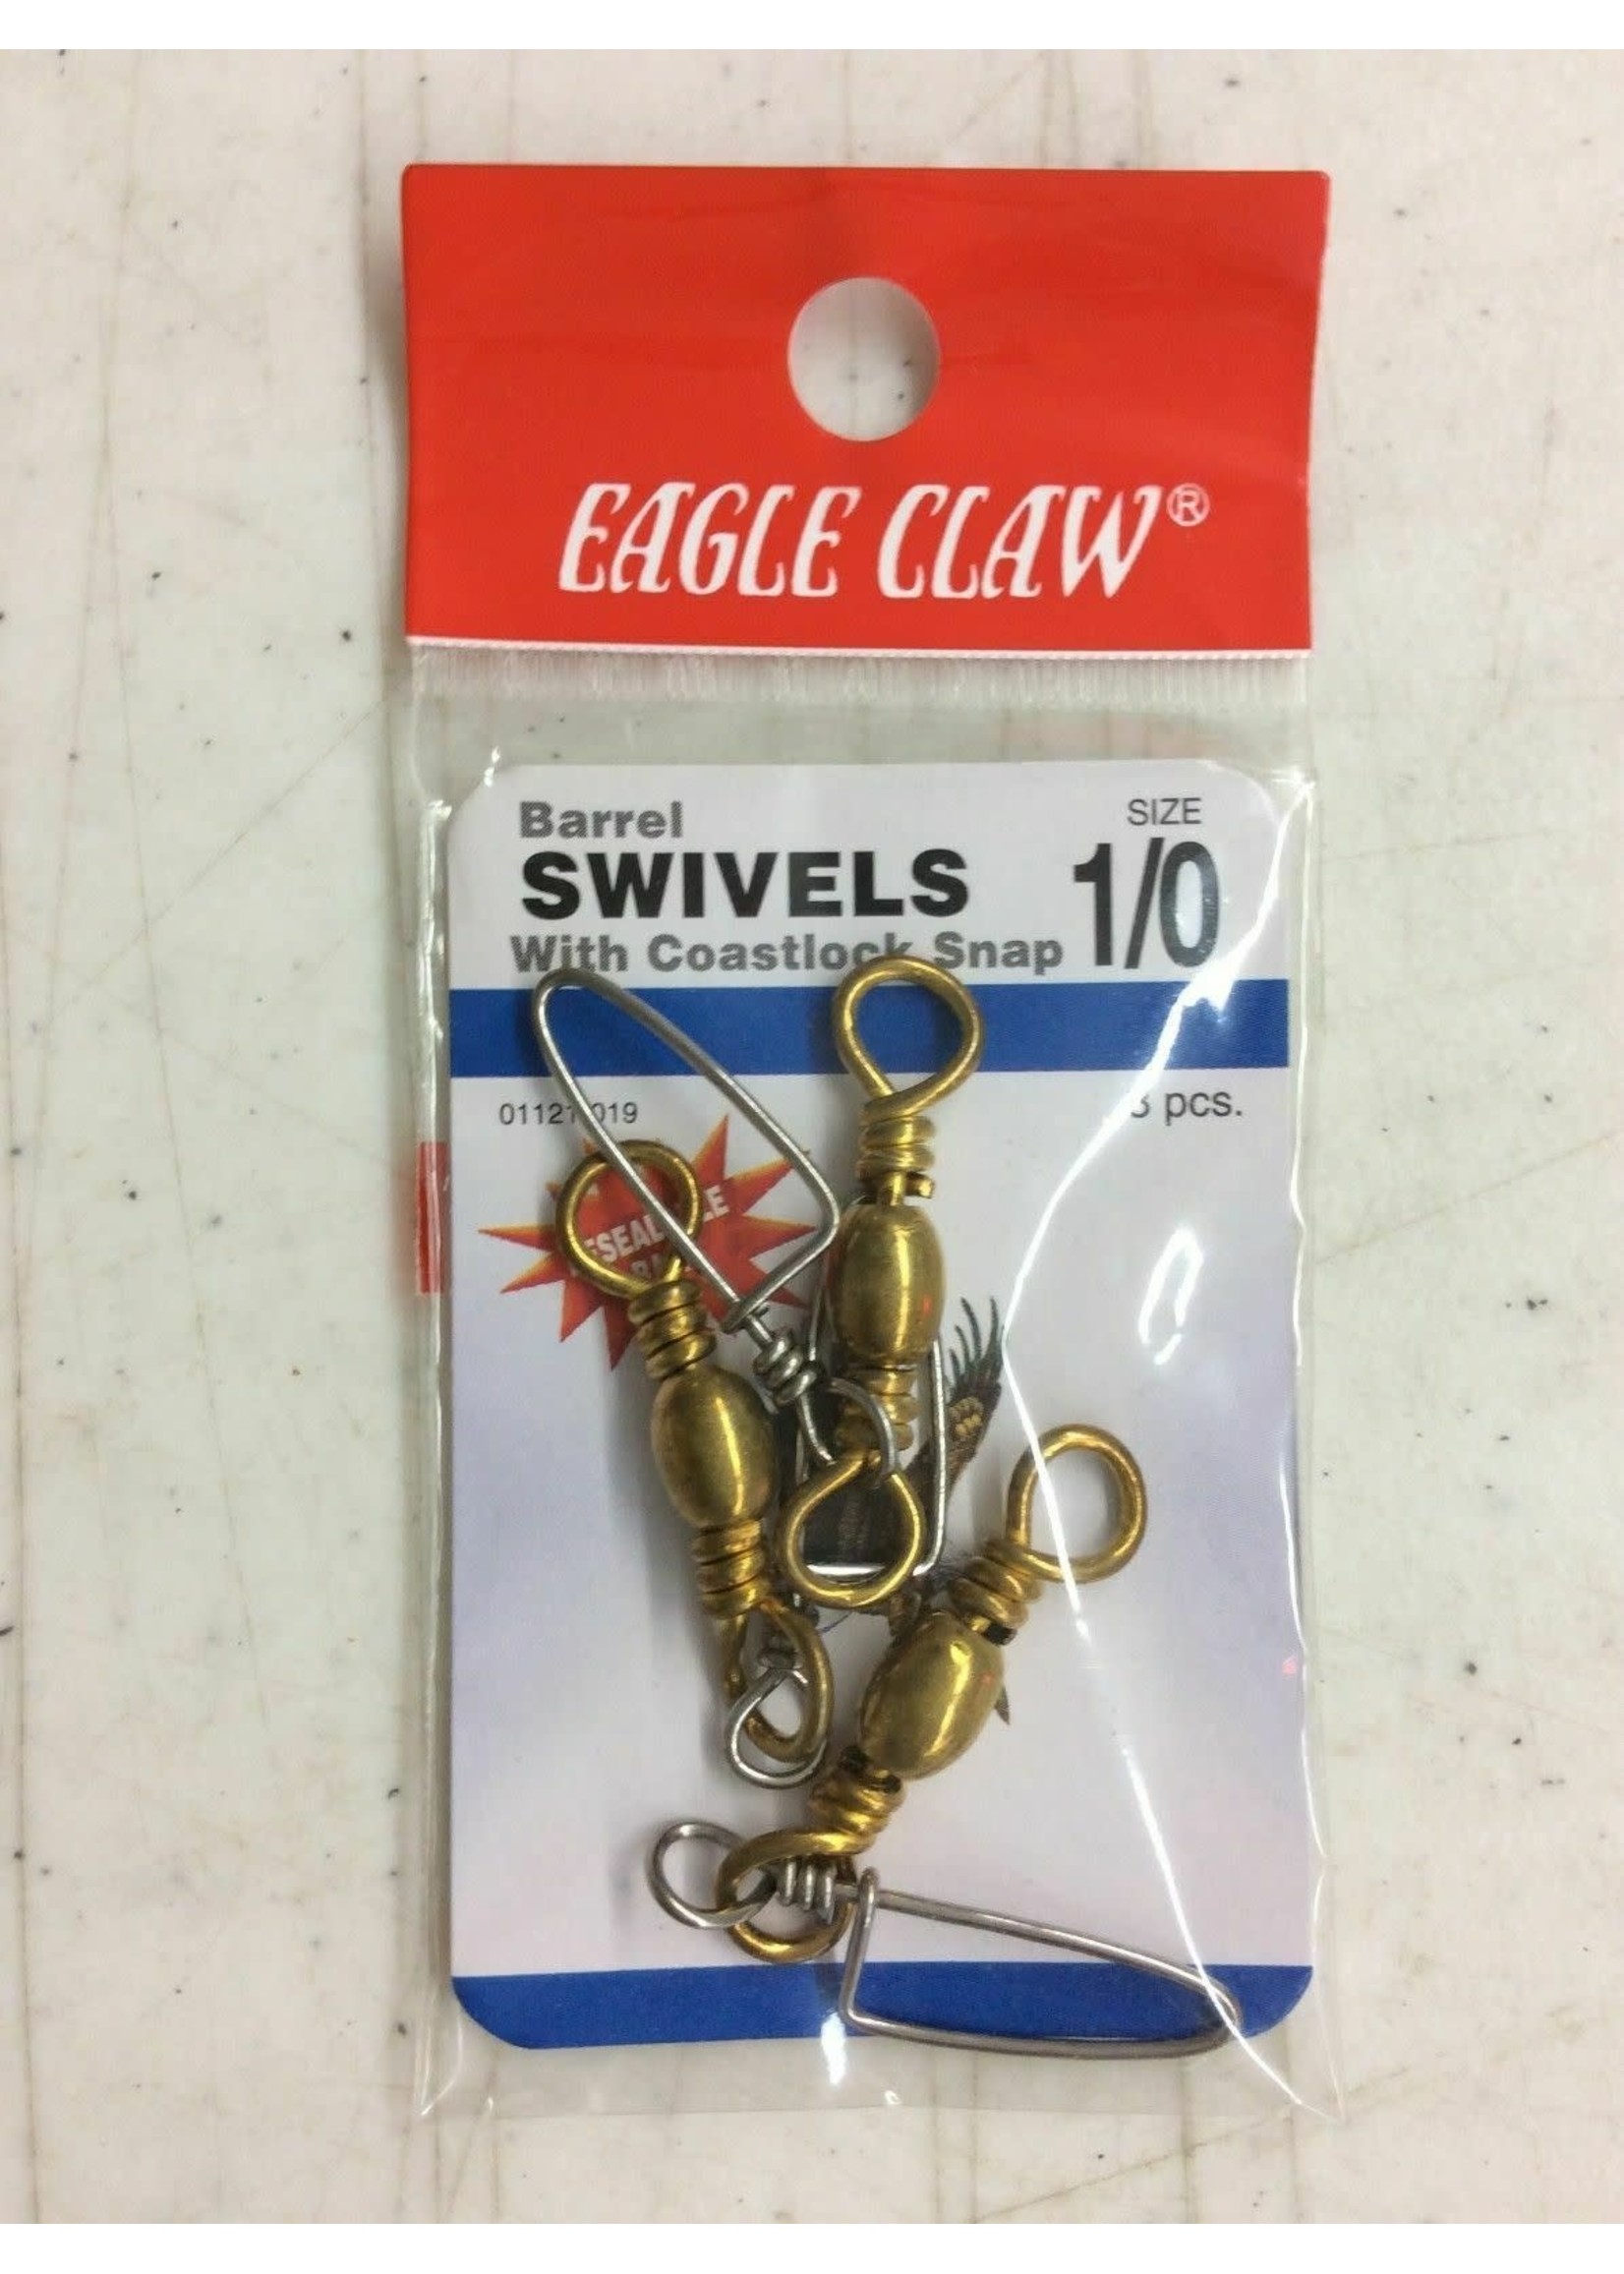 Eagle Claw EAGLE CLAW BARREL SWIVEL W COASTLOCK SNAP 01121-019 SIZE1/0